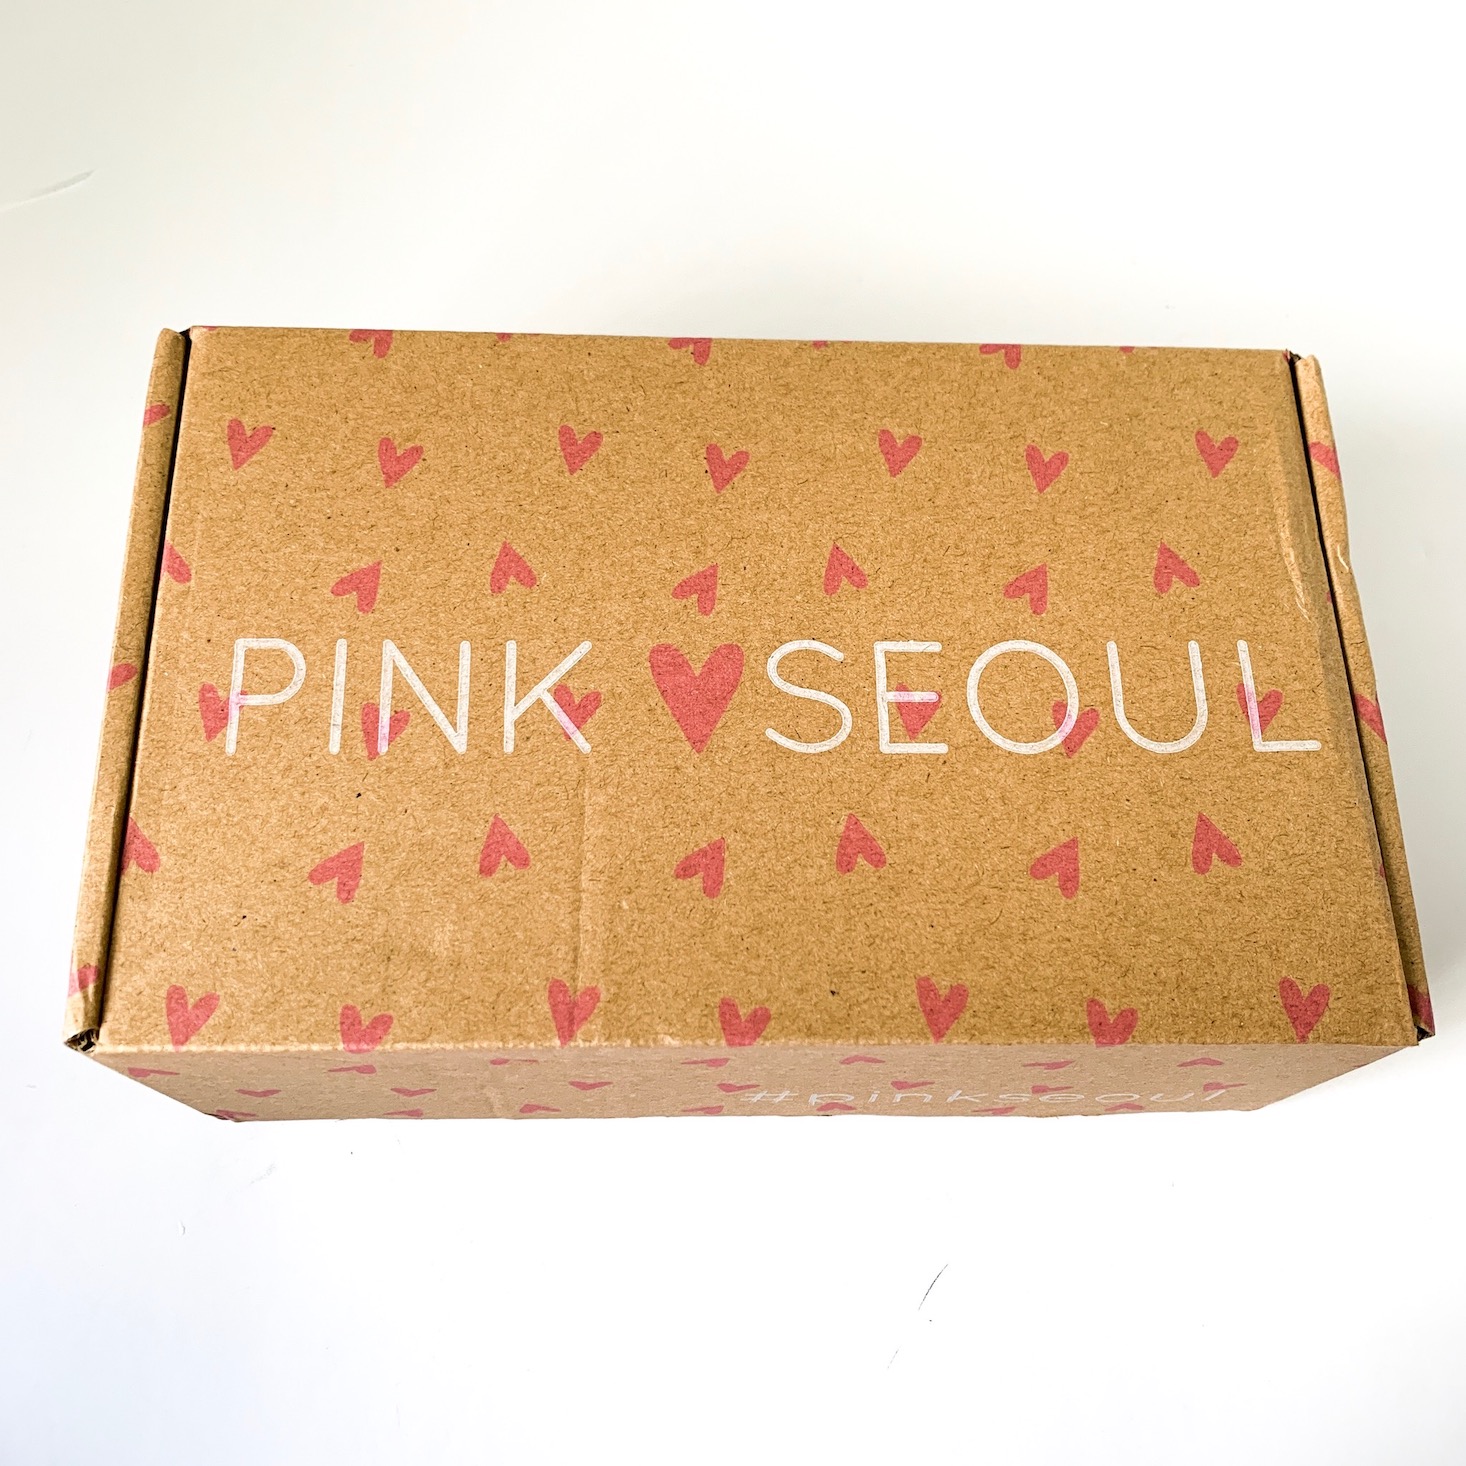 PinkSeoul K-Beauty Box Review + Coupon – April 2019